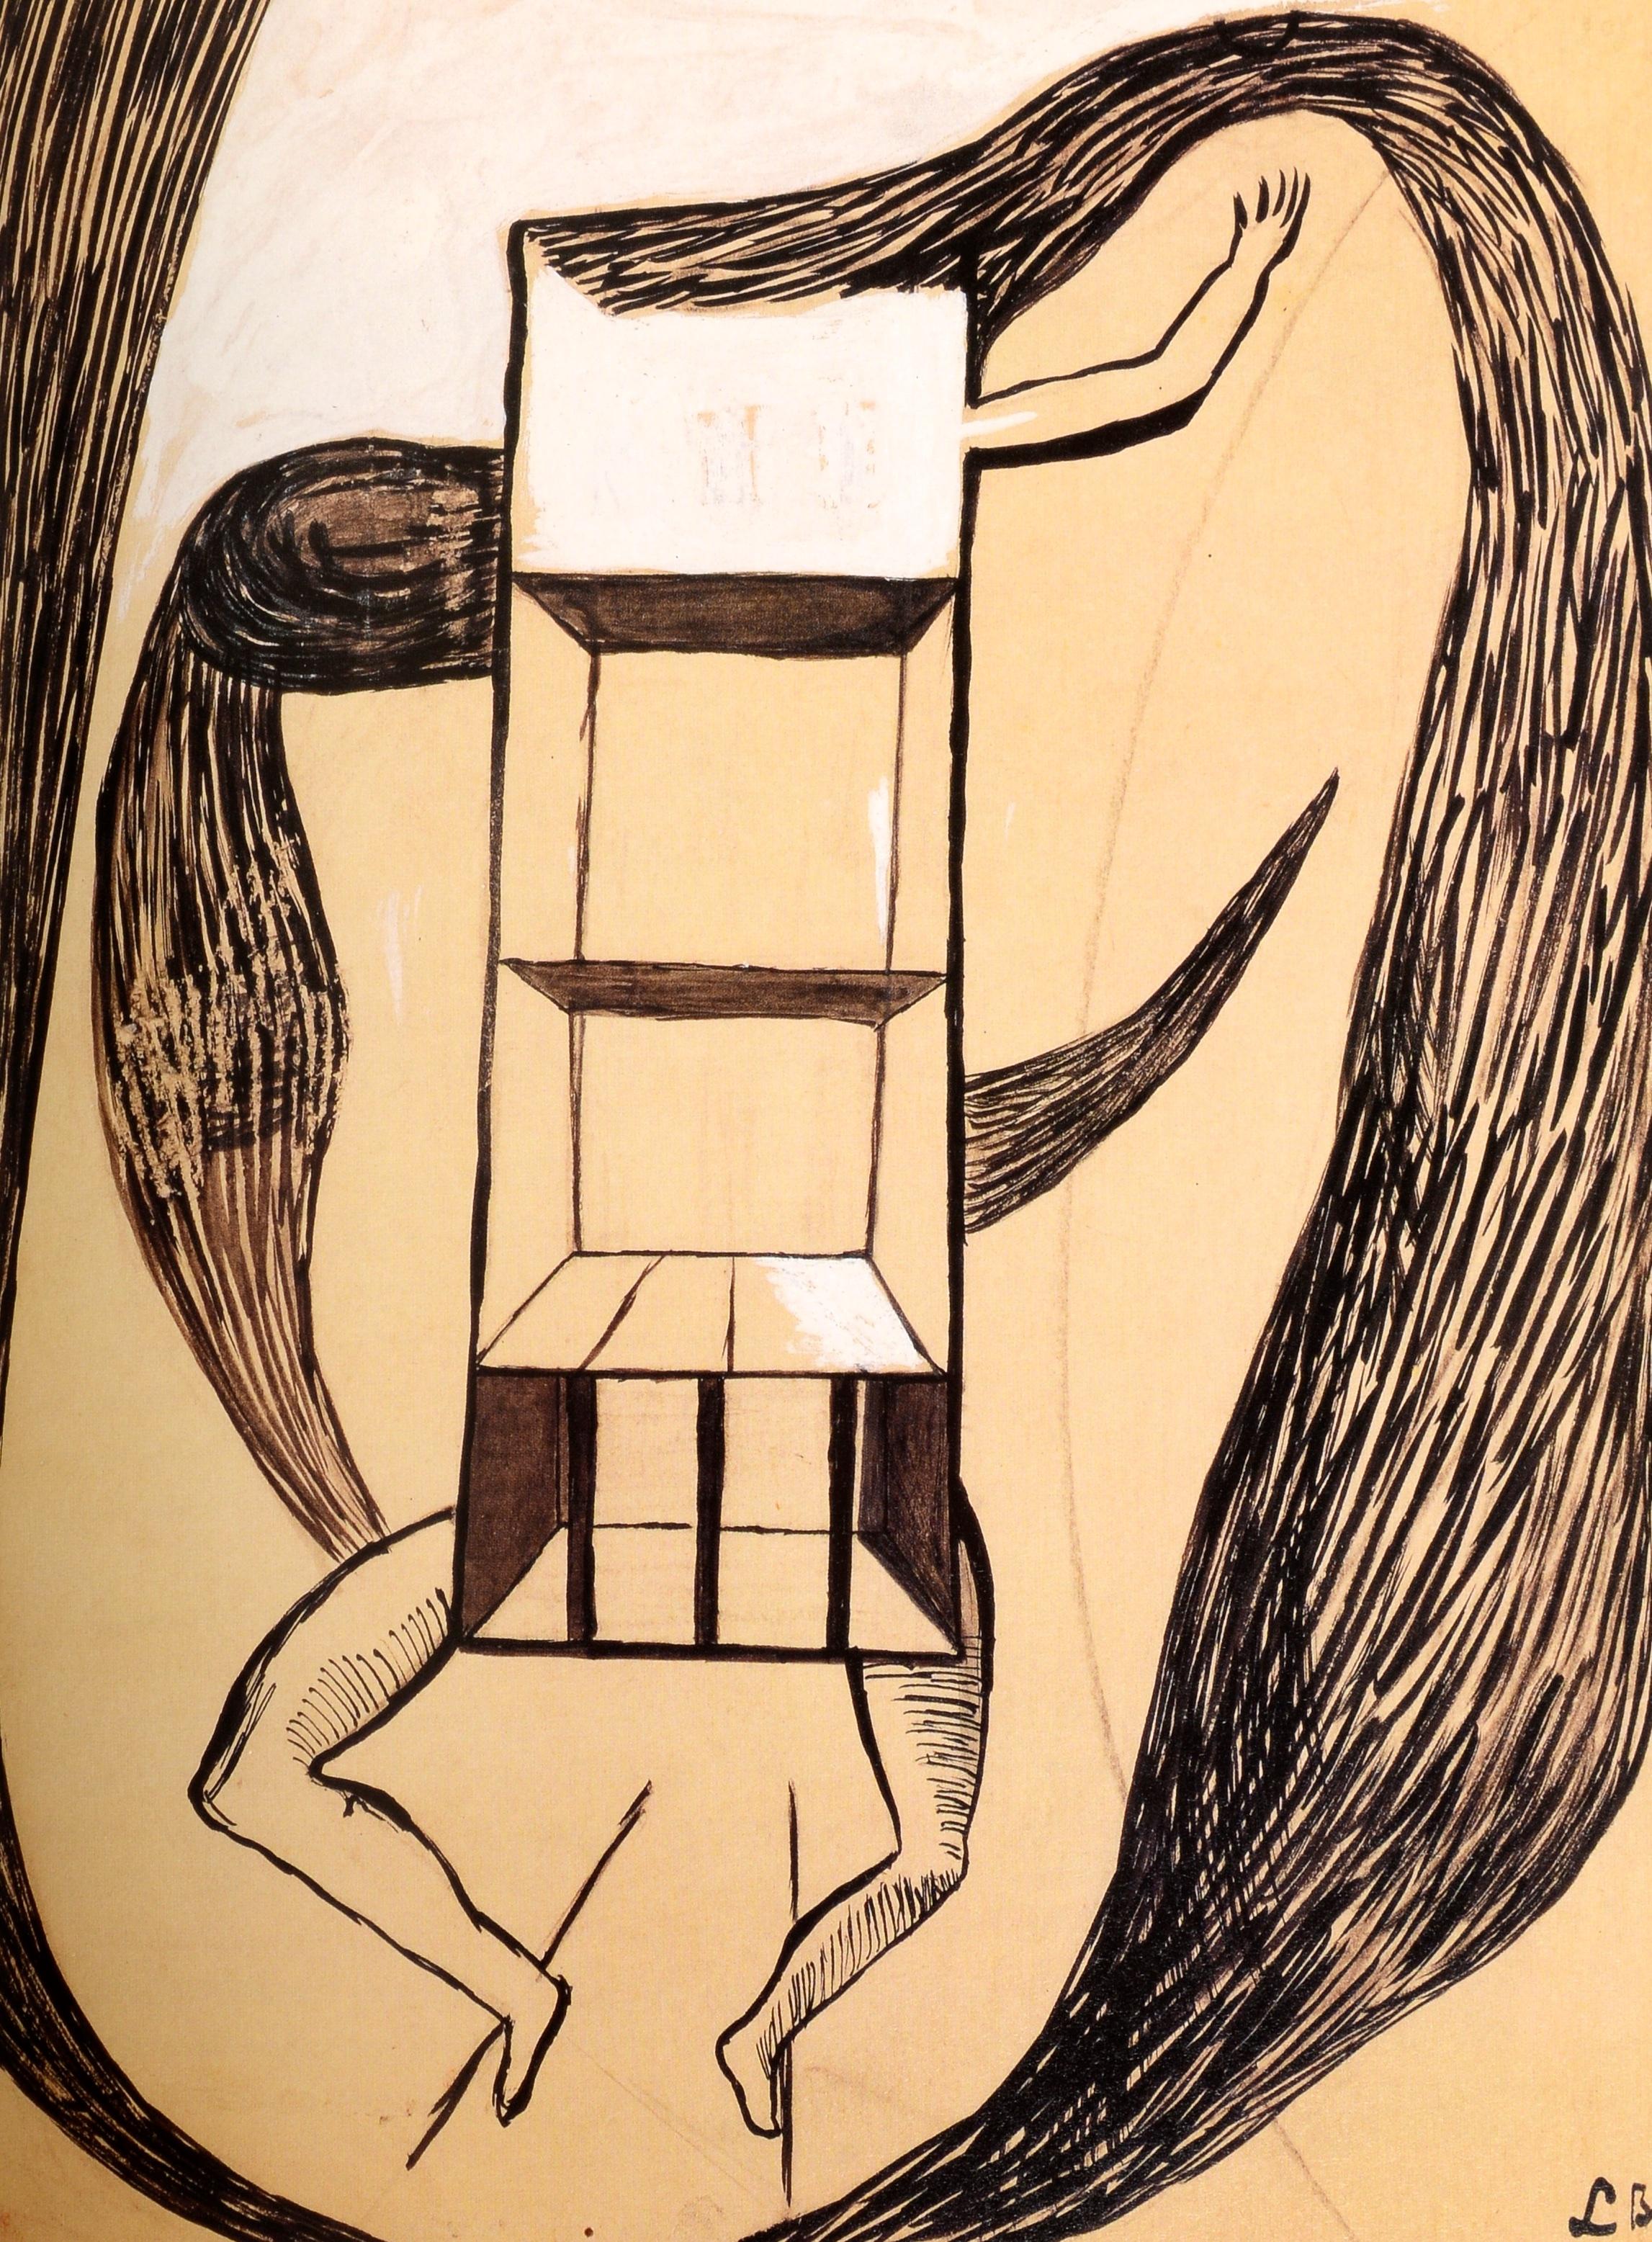 New York sammelt: Zeichnungen und Aquarelle, 1900-1950. Herausgeber: Pierpont Morgan Library, 1999. 1st Ed Hardcover mit Schutzumschlag. Veröffentlicht in Verbindung mit der Ausstellung von der Pierpont Morgan Library. Pablo Picasso, Wassily